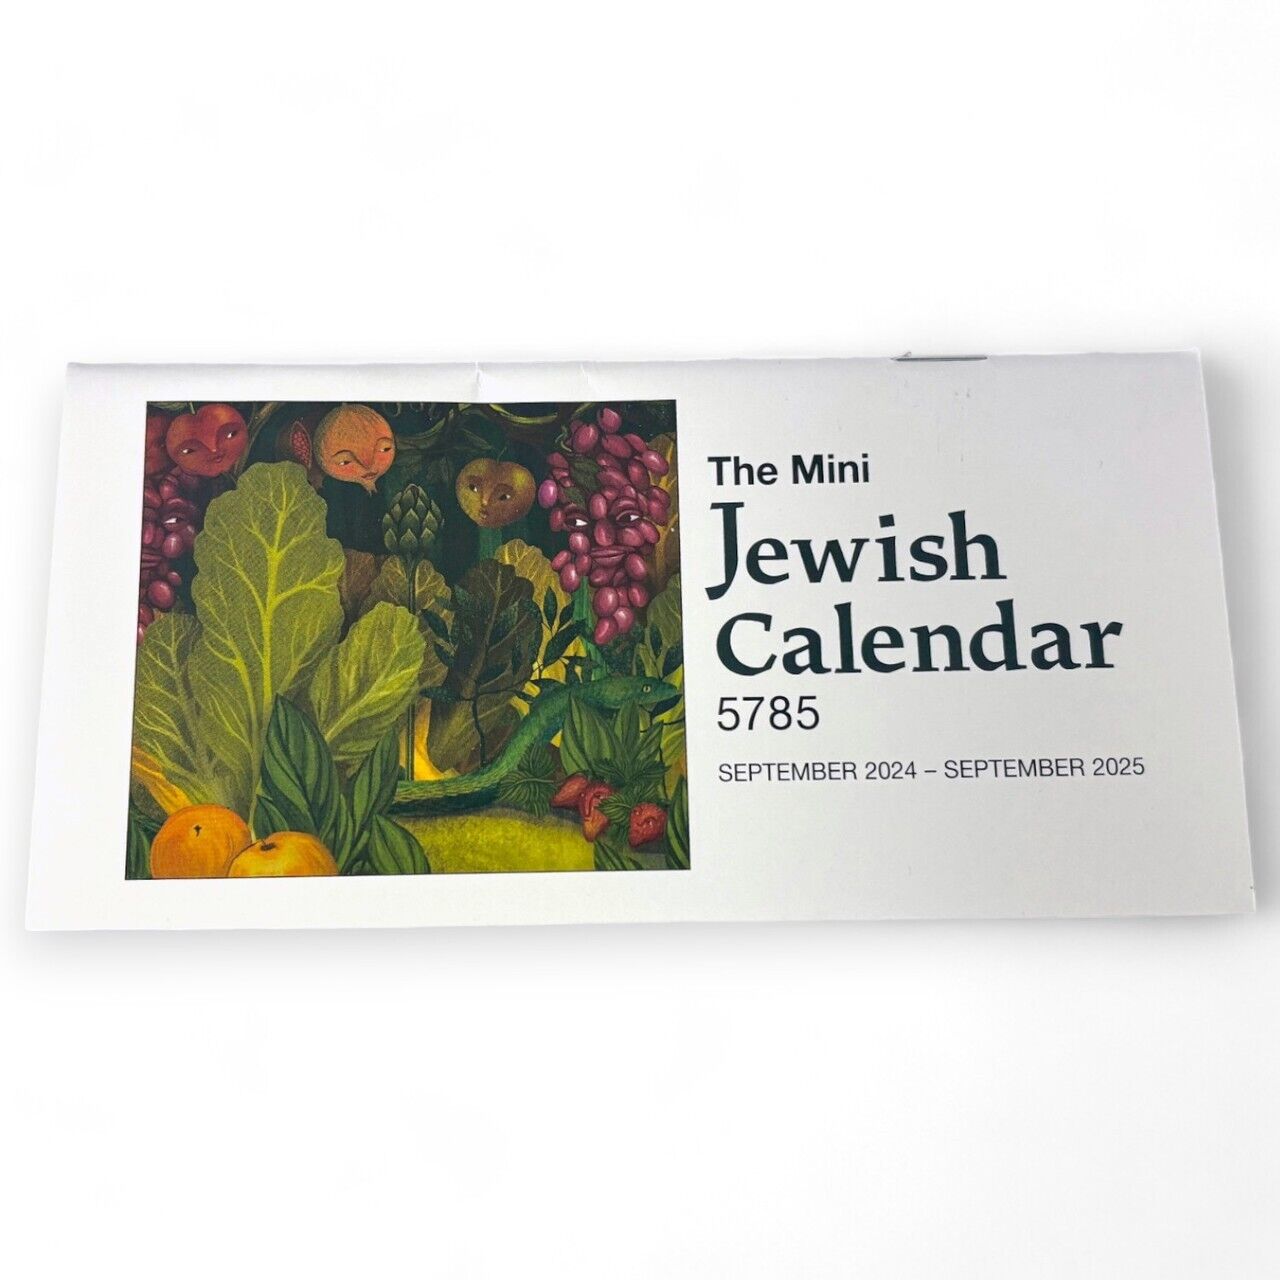 Mini Jewish Calendar 5785: 2024-2025 - Pocket/Purse size